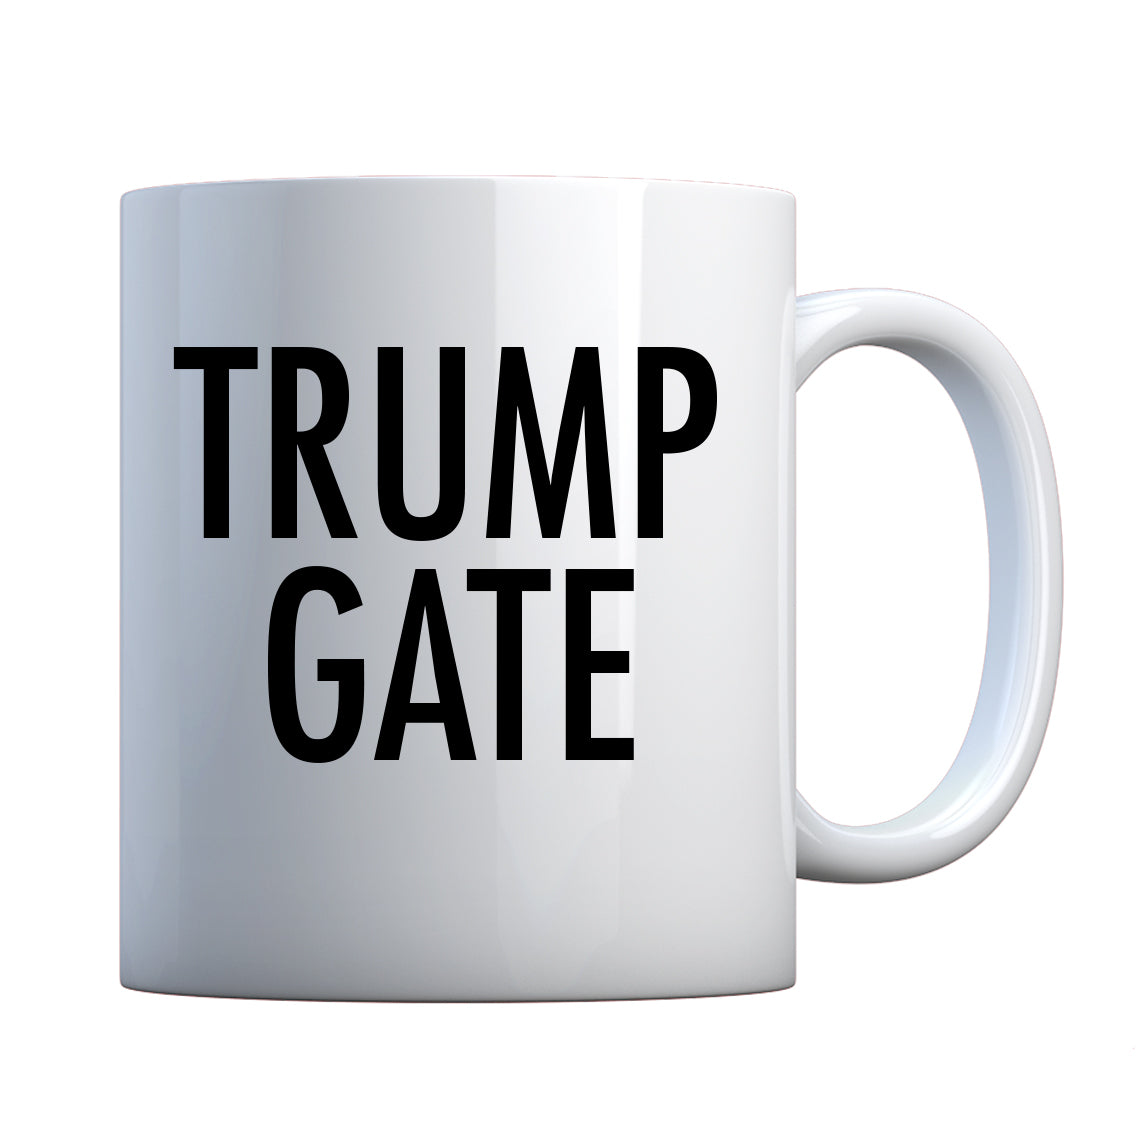 Mug Hashtag Trumpgate Ceramic Gift Mug